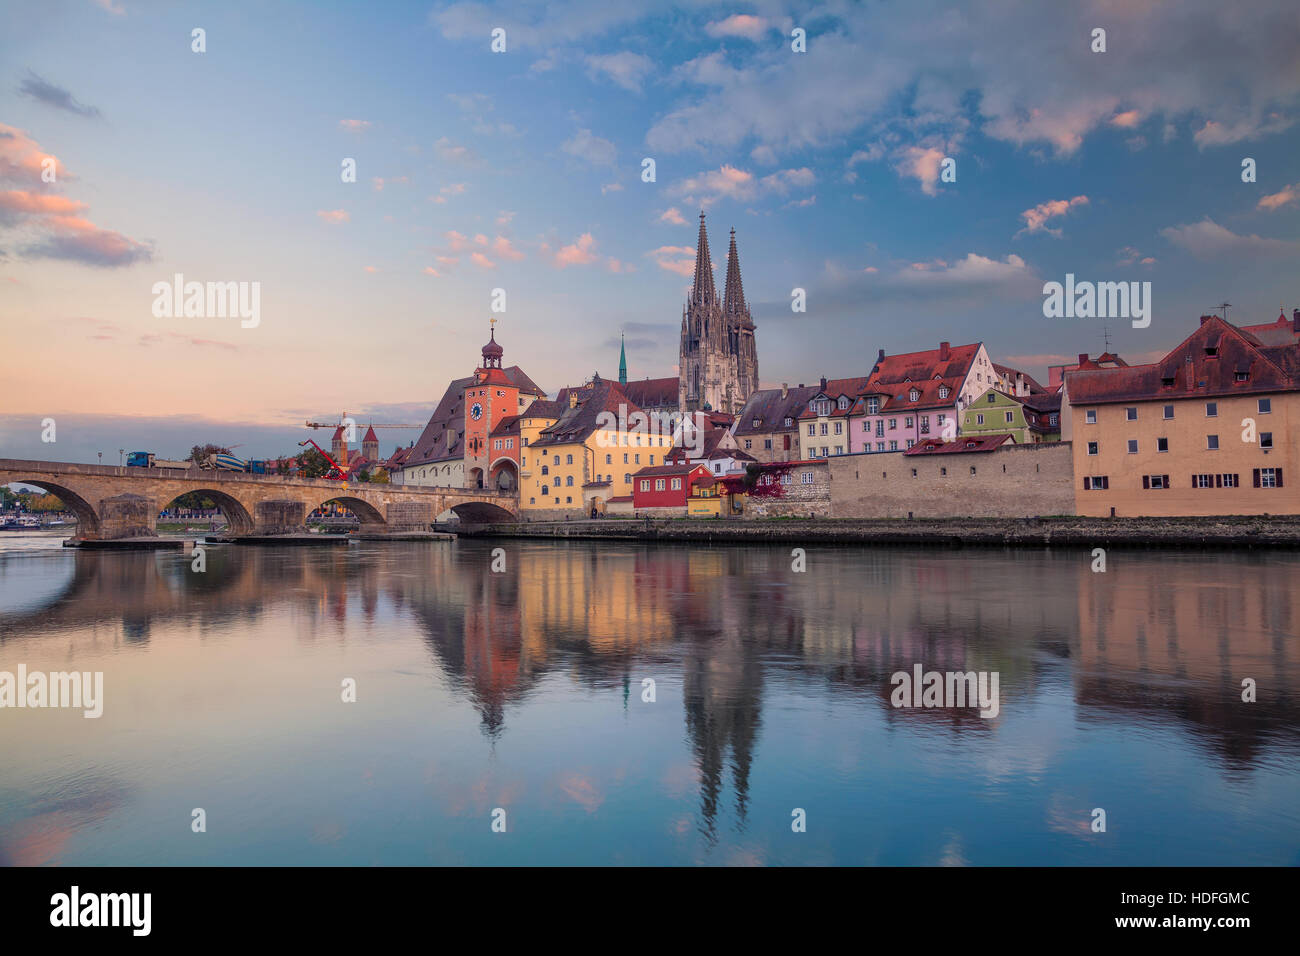 Regensburg. Cityscape image de Regensburg, Allemagne pendant le coucher du soleil. Banque D'Images